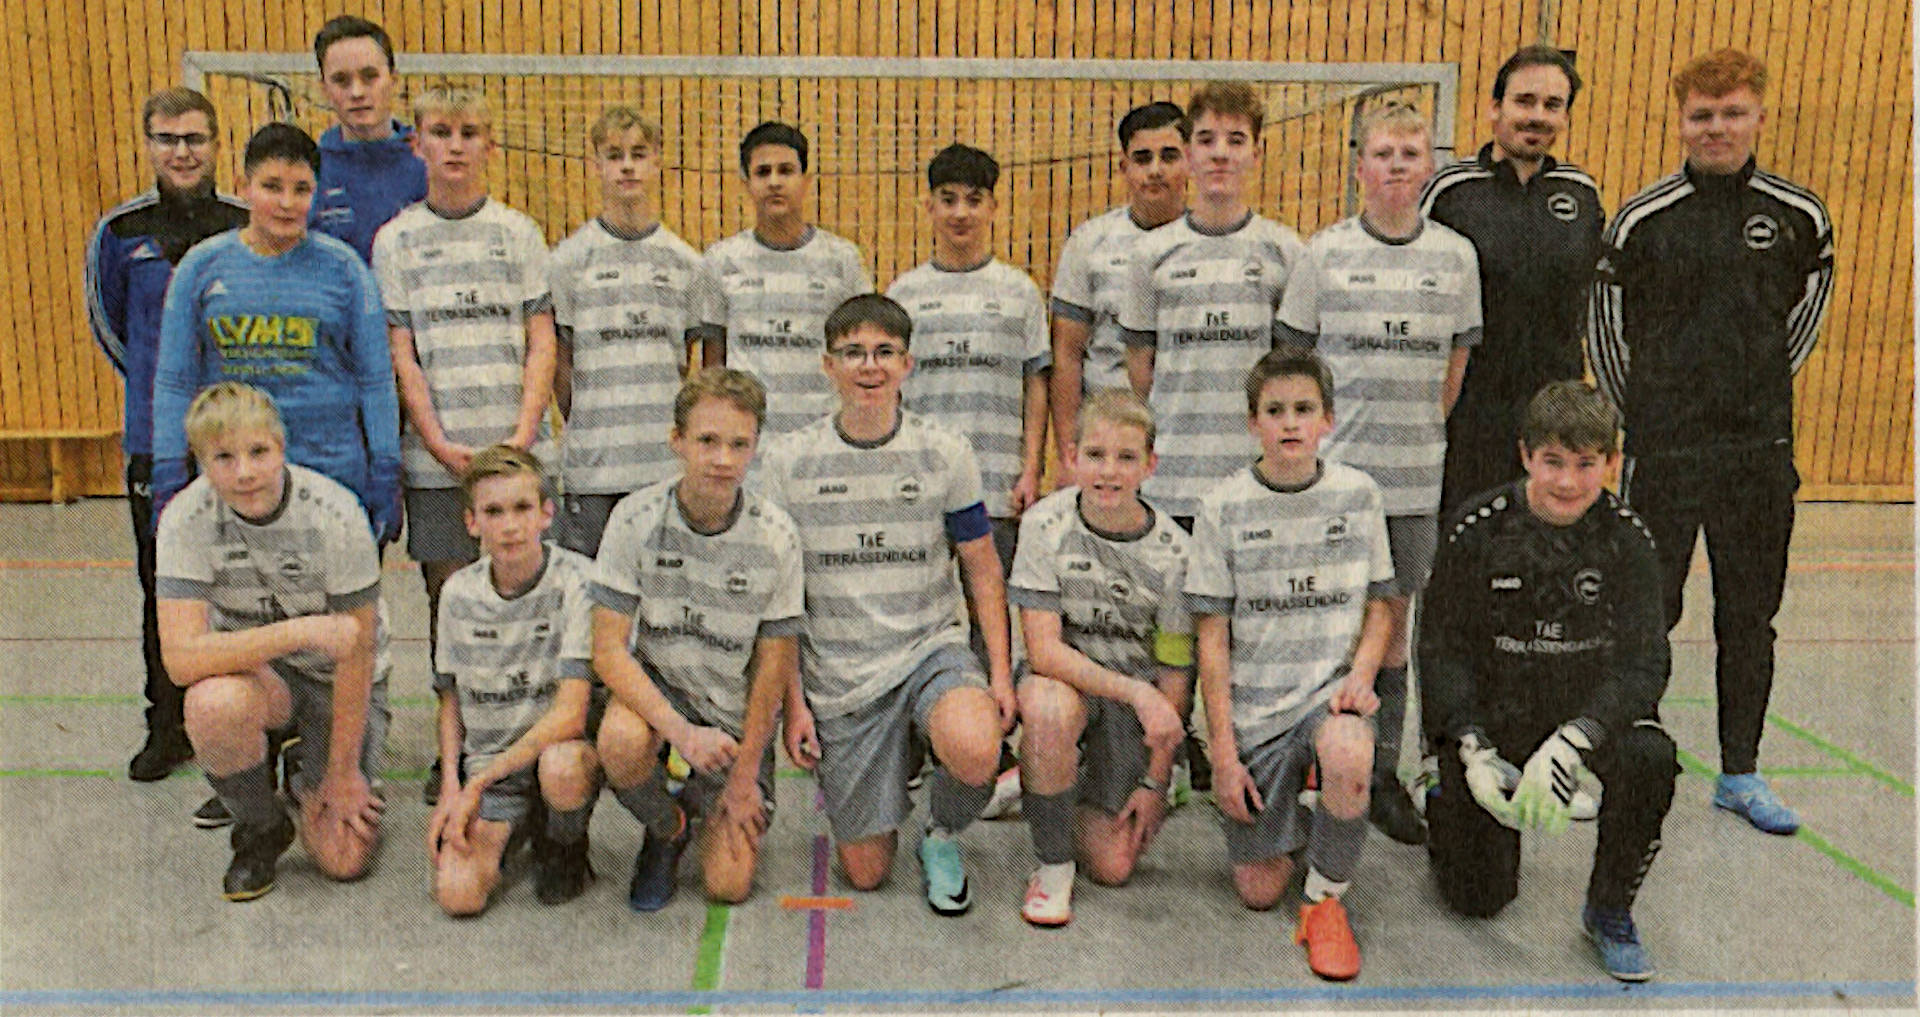 Die C-Junioren der JSG Osterwick/Darfeldstellten beim Wolksbank Baumberge-Cup zwei Mannschaften, schieden aber nach der Gruppenphase aus.